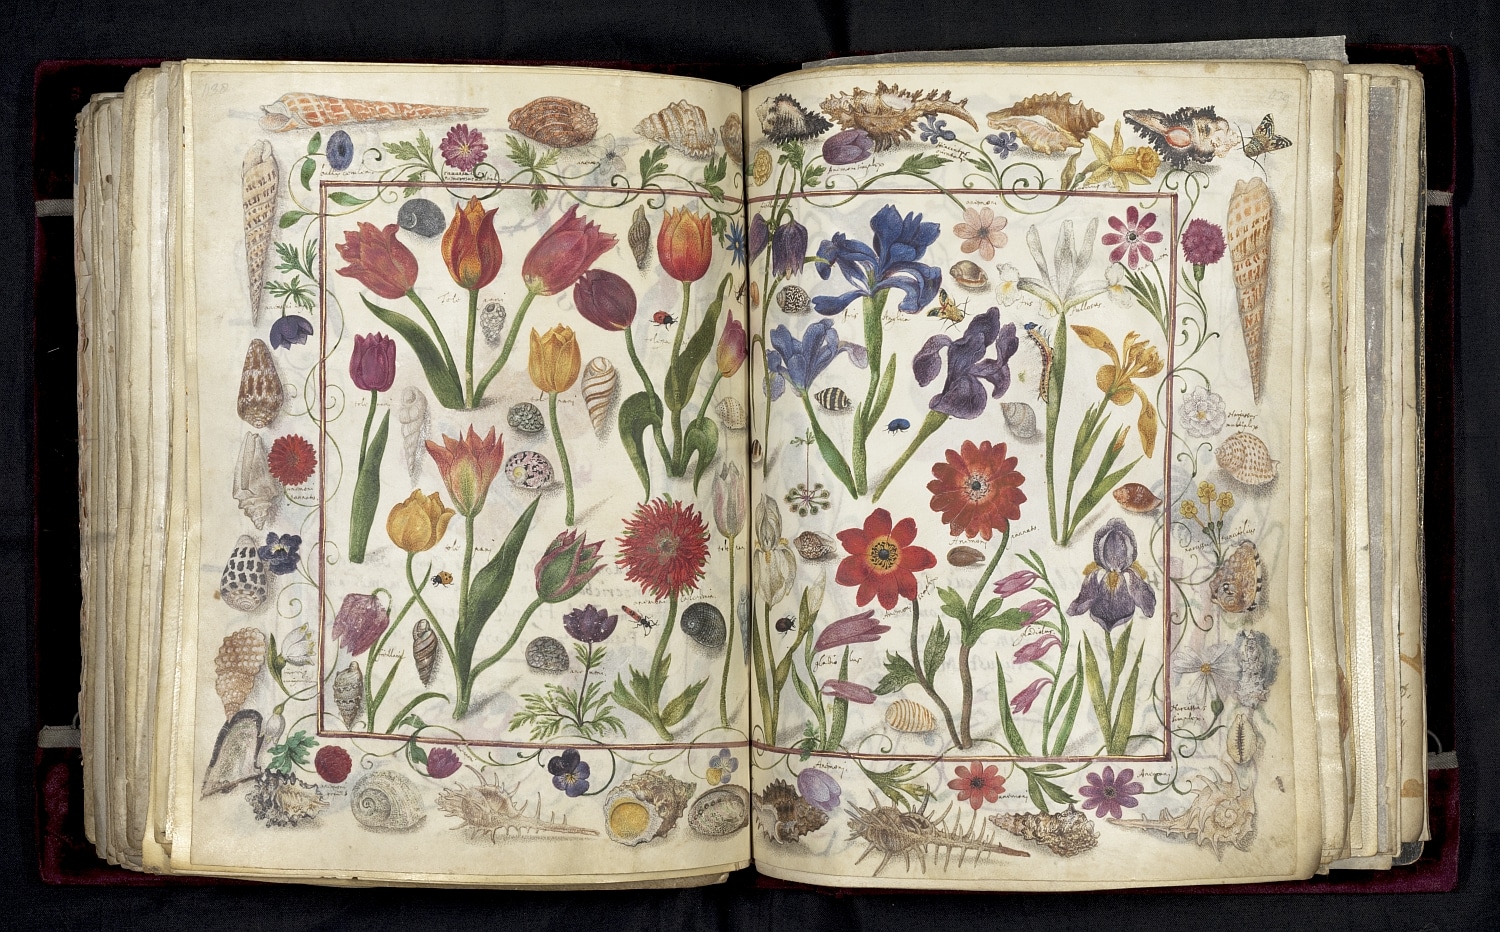 Auszug aus dem Großen Stammbuch Philipp Hainhofers: Eine Doppelseite mit Zeichnungen von verschiedenen Blumen, die von Muscheln umrahmt sind